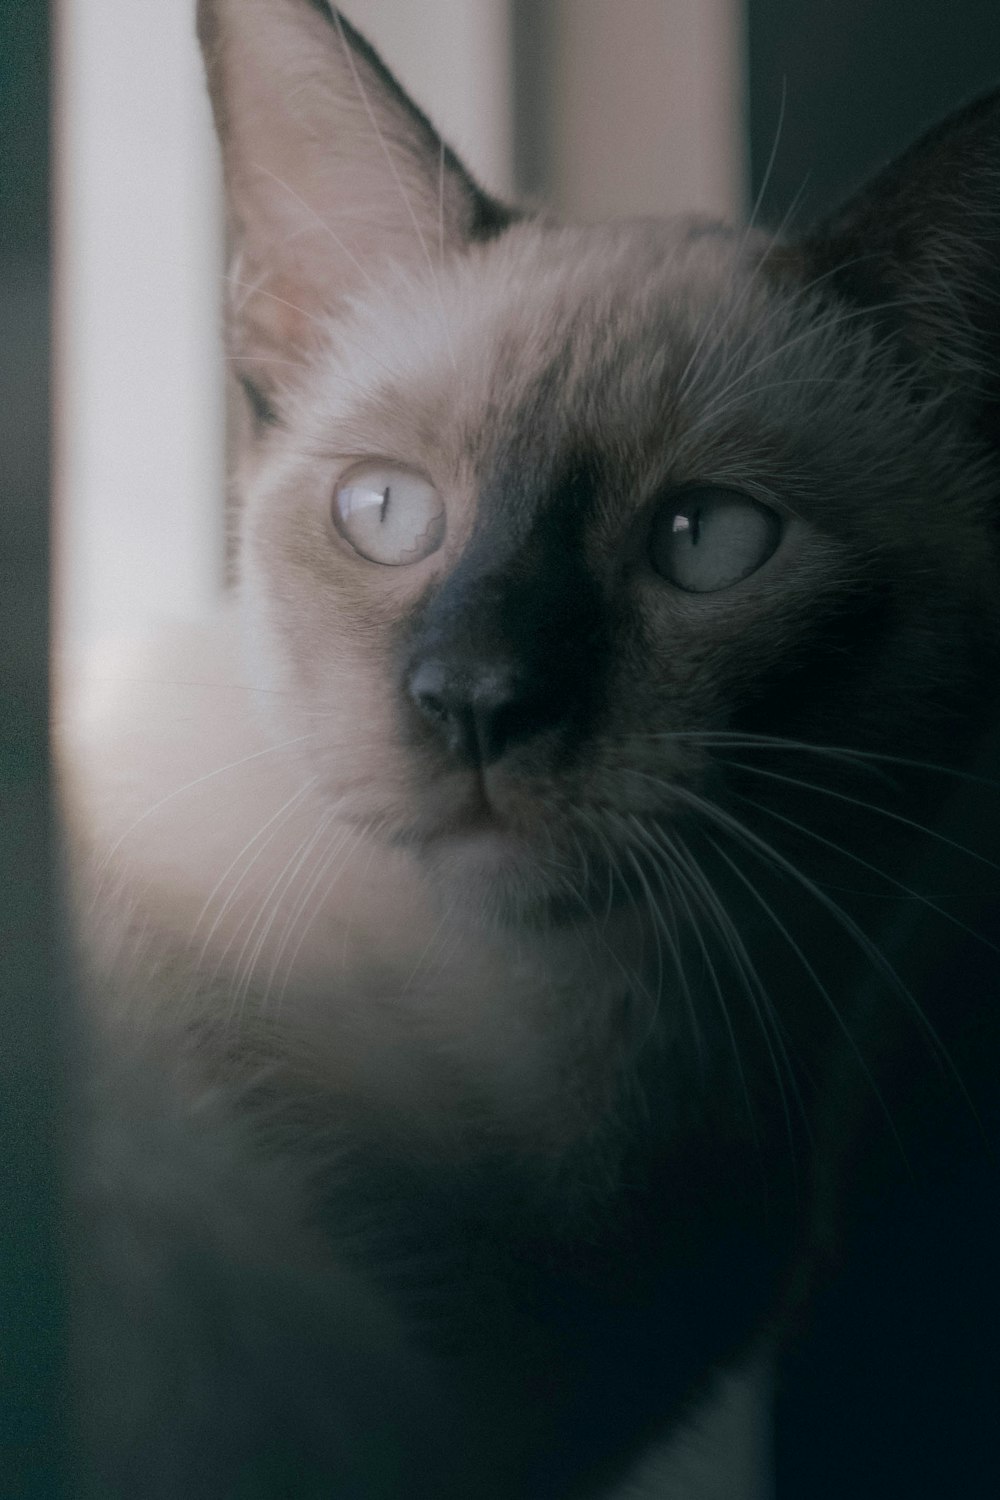 Un gatto siamese che guarda fuori da una finestra